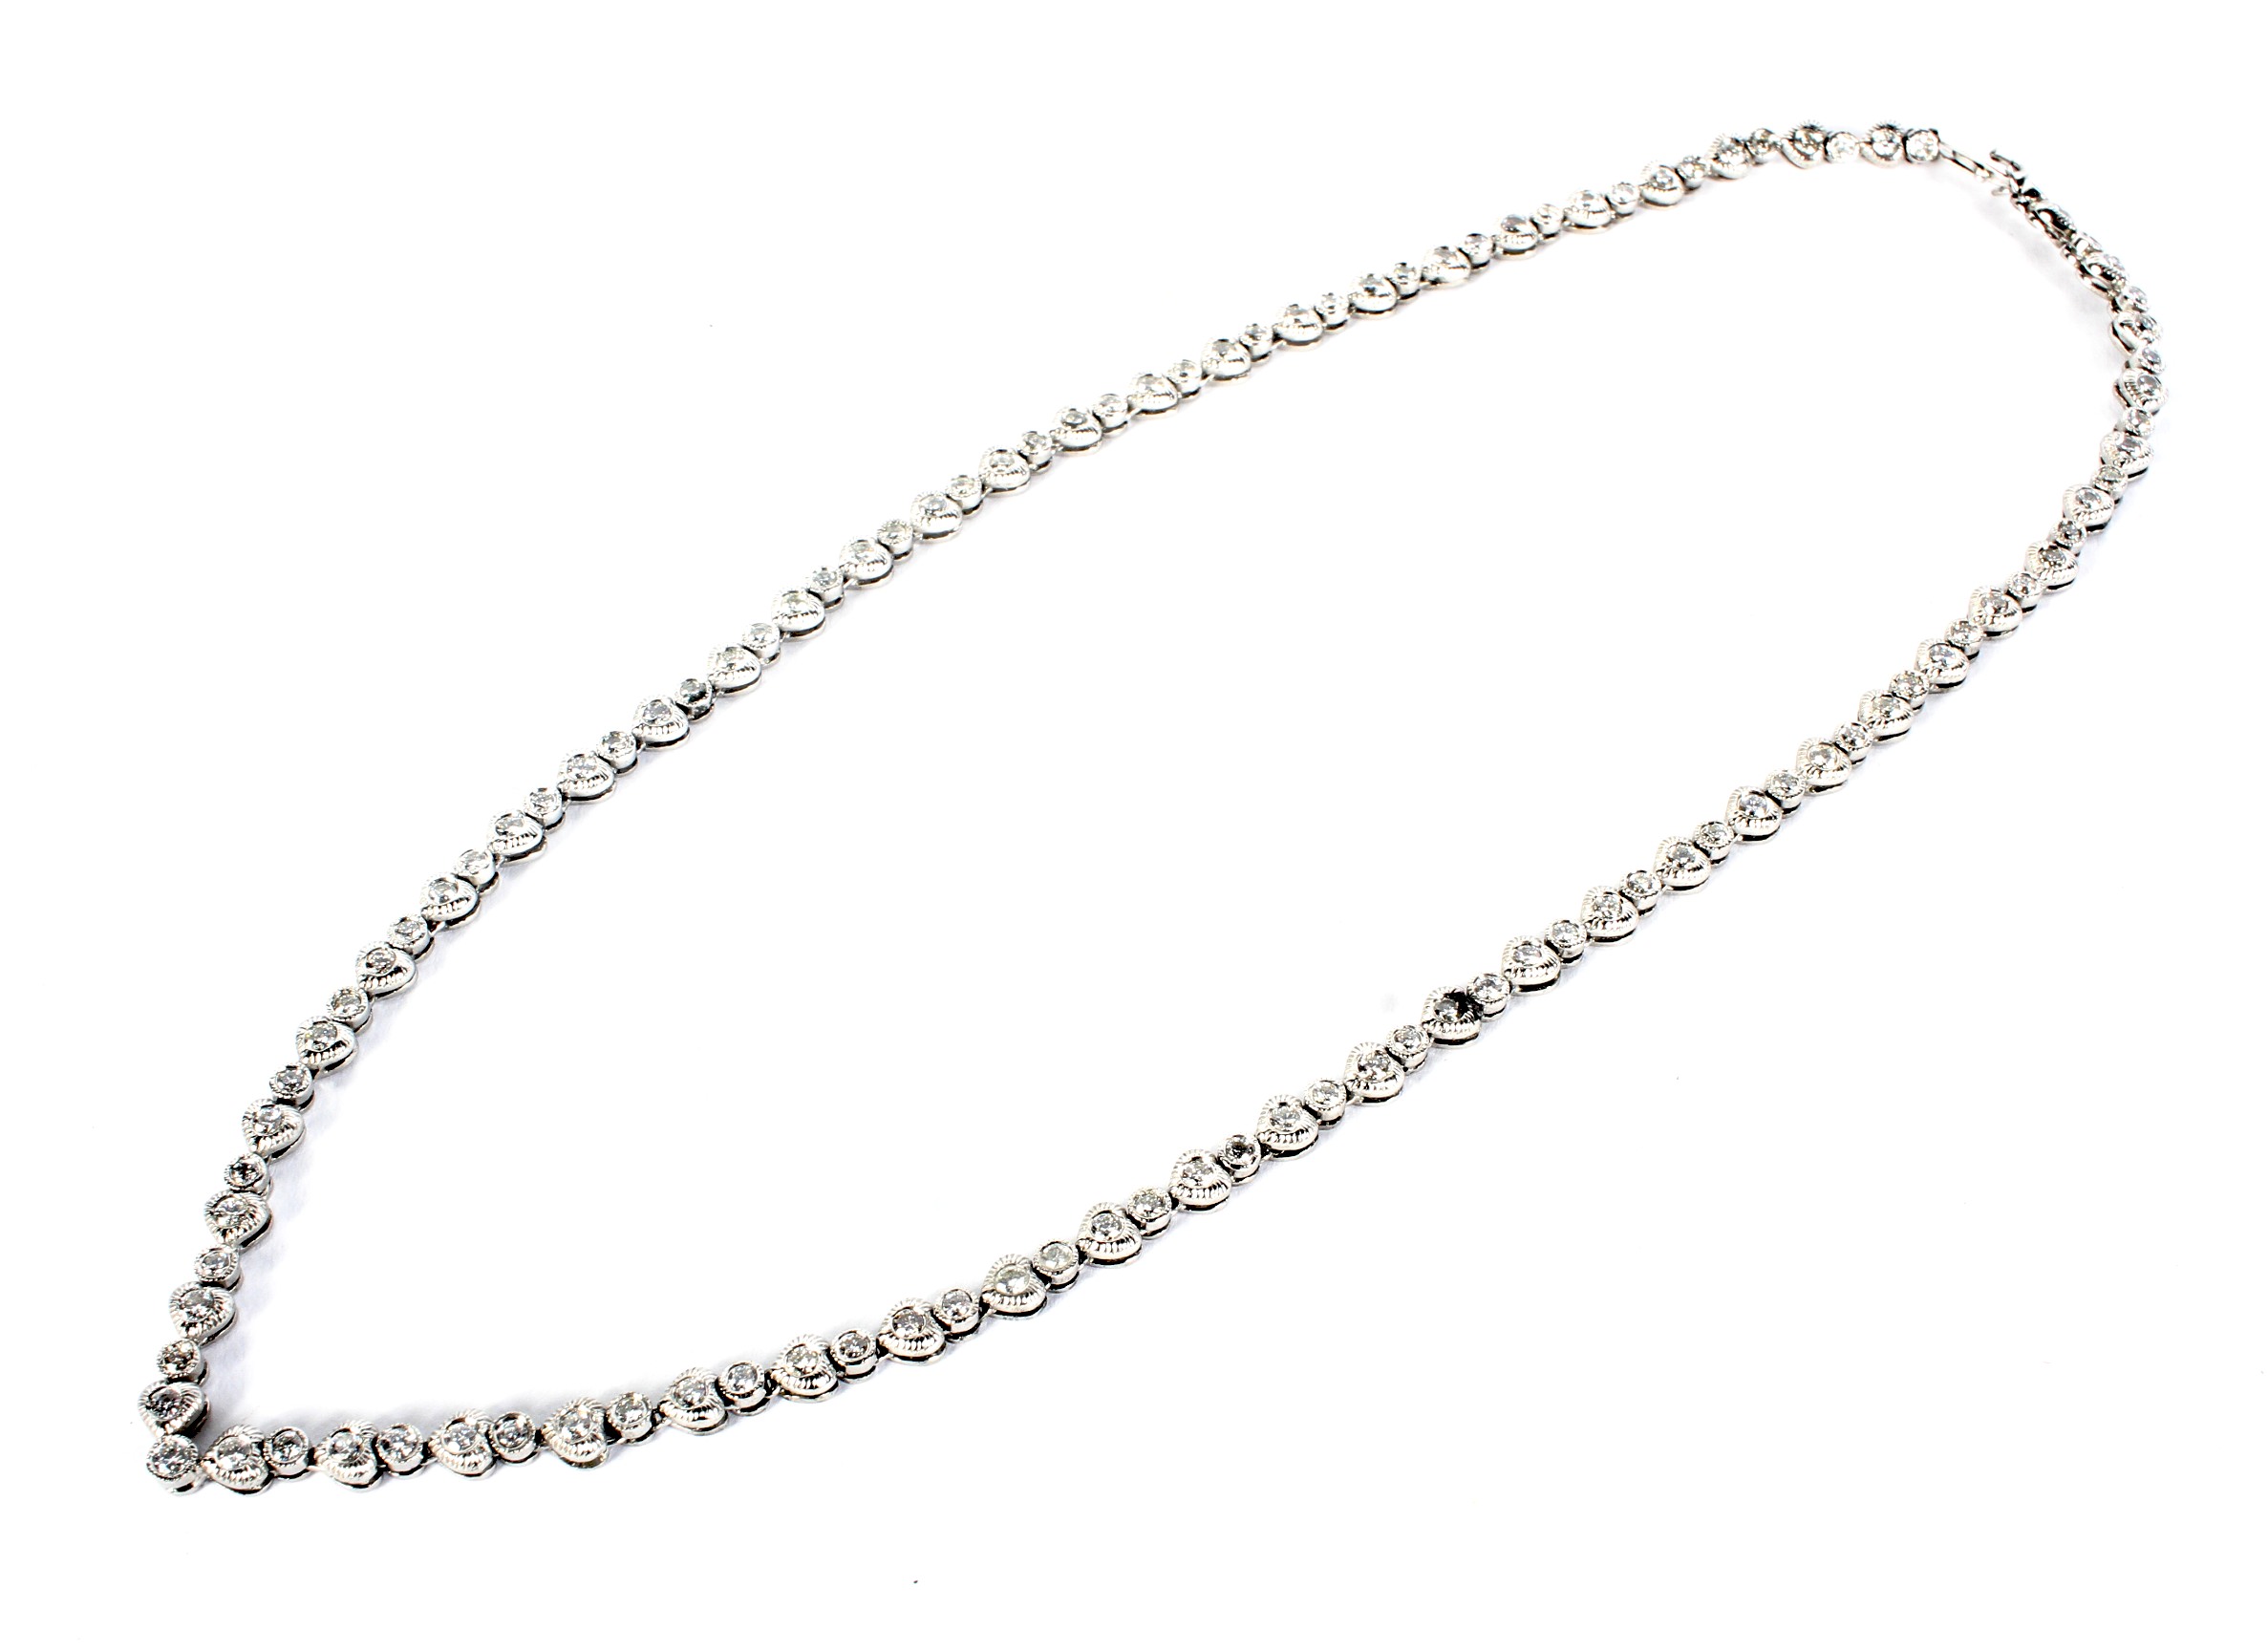 A modern diamond necklace.